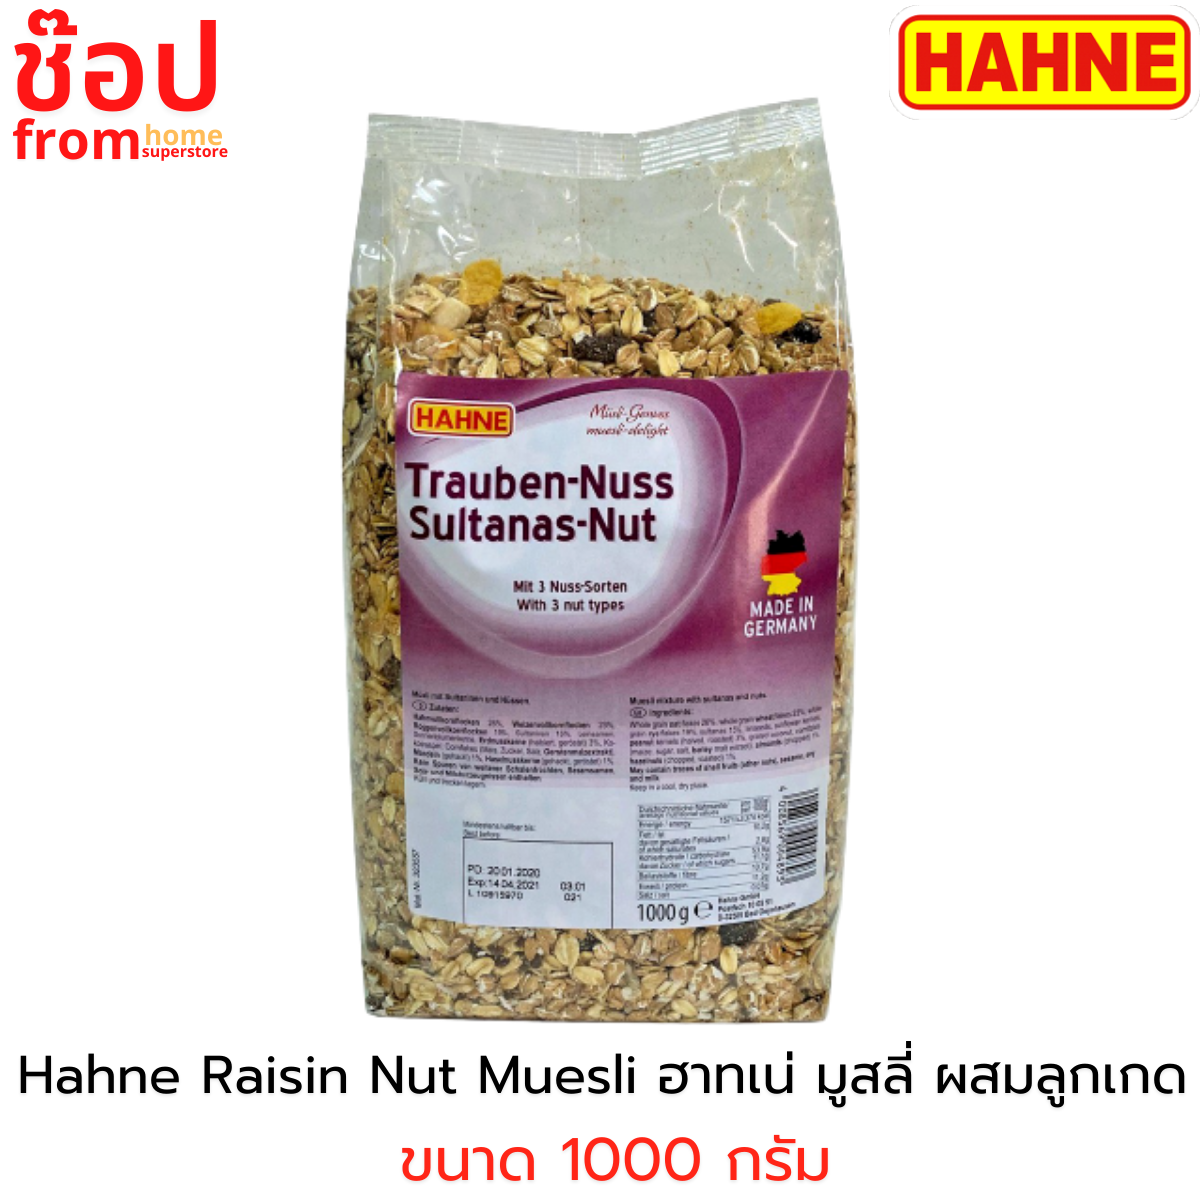 Hahne Raisin Nut Muesli ฮาทเน่ เรซิน นัต มูสลี่ ผสมลูกเกด ขนาด 1000 กรัม อร่อยไม่หวาน ได้สารอาหารจัดเต็ม อาหารเช้าเพื่อสุขภาพ ข้าวโอ๊ตธัญพืช